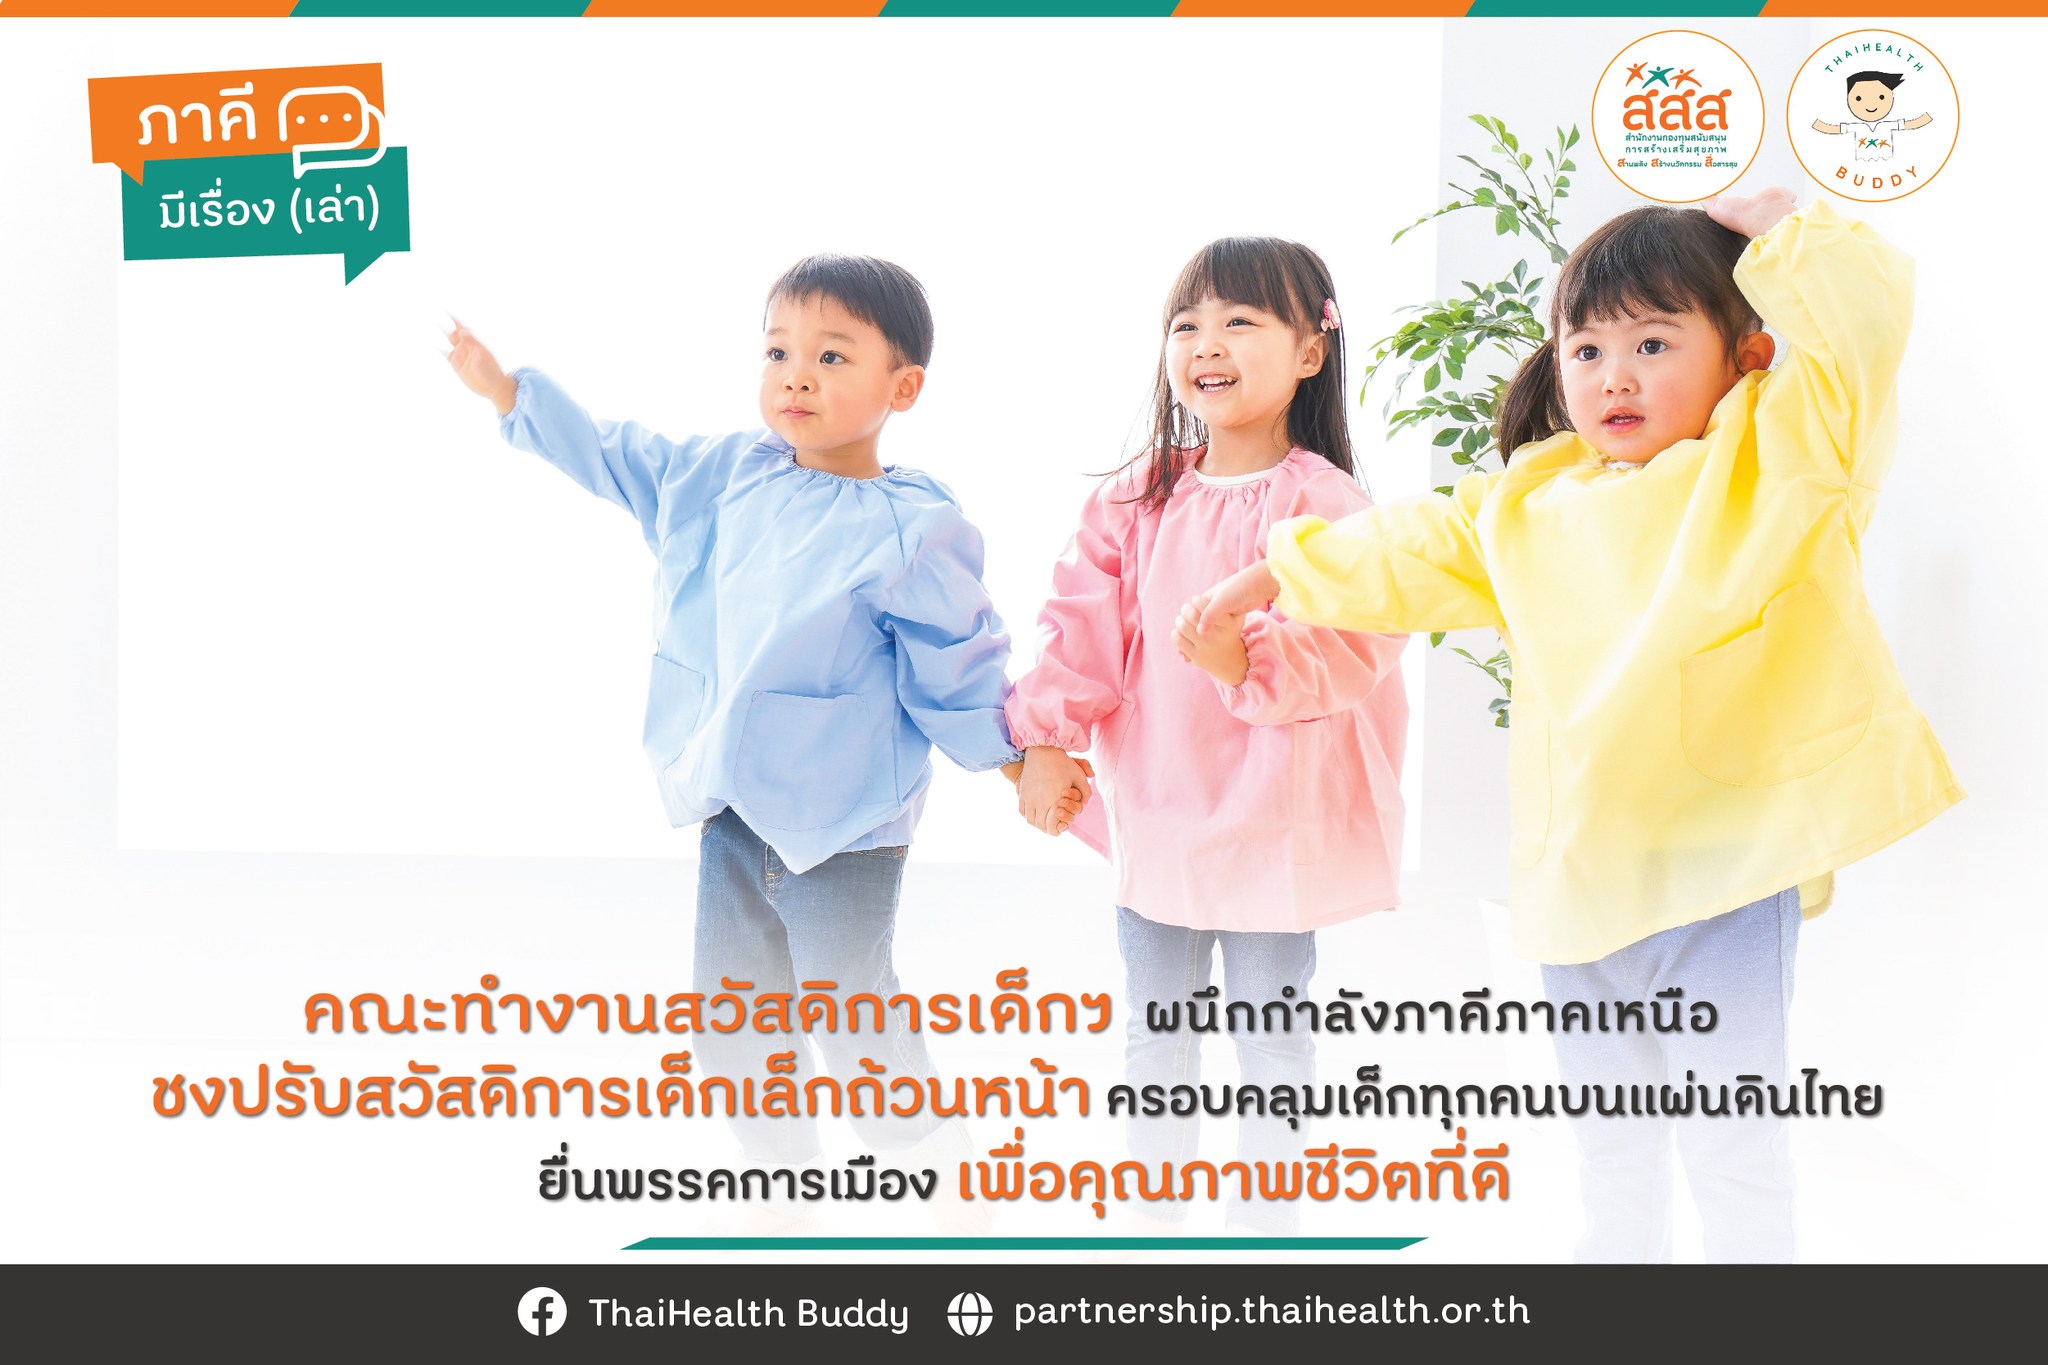 คณะทำงานสวัสดิการเด็กฯ ผนึกภาคีเครือข่ายภาคเหนือ ชง ปรับสวัสดิการเด็กเล็กถ้วนหน้า ครอบคลุมเด็กทุกคนบนแผนดินไทย ยื่นพรรคการเมือง เพื่อคุณภาพชีวิตที่ดี